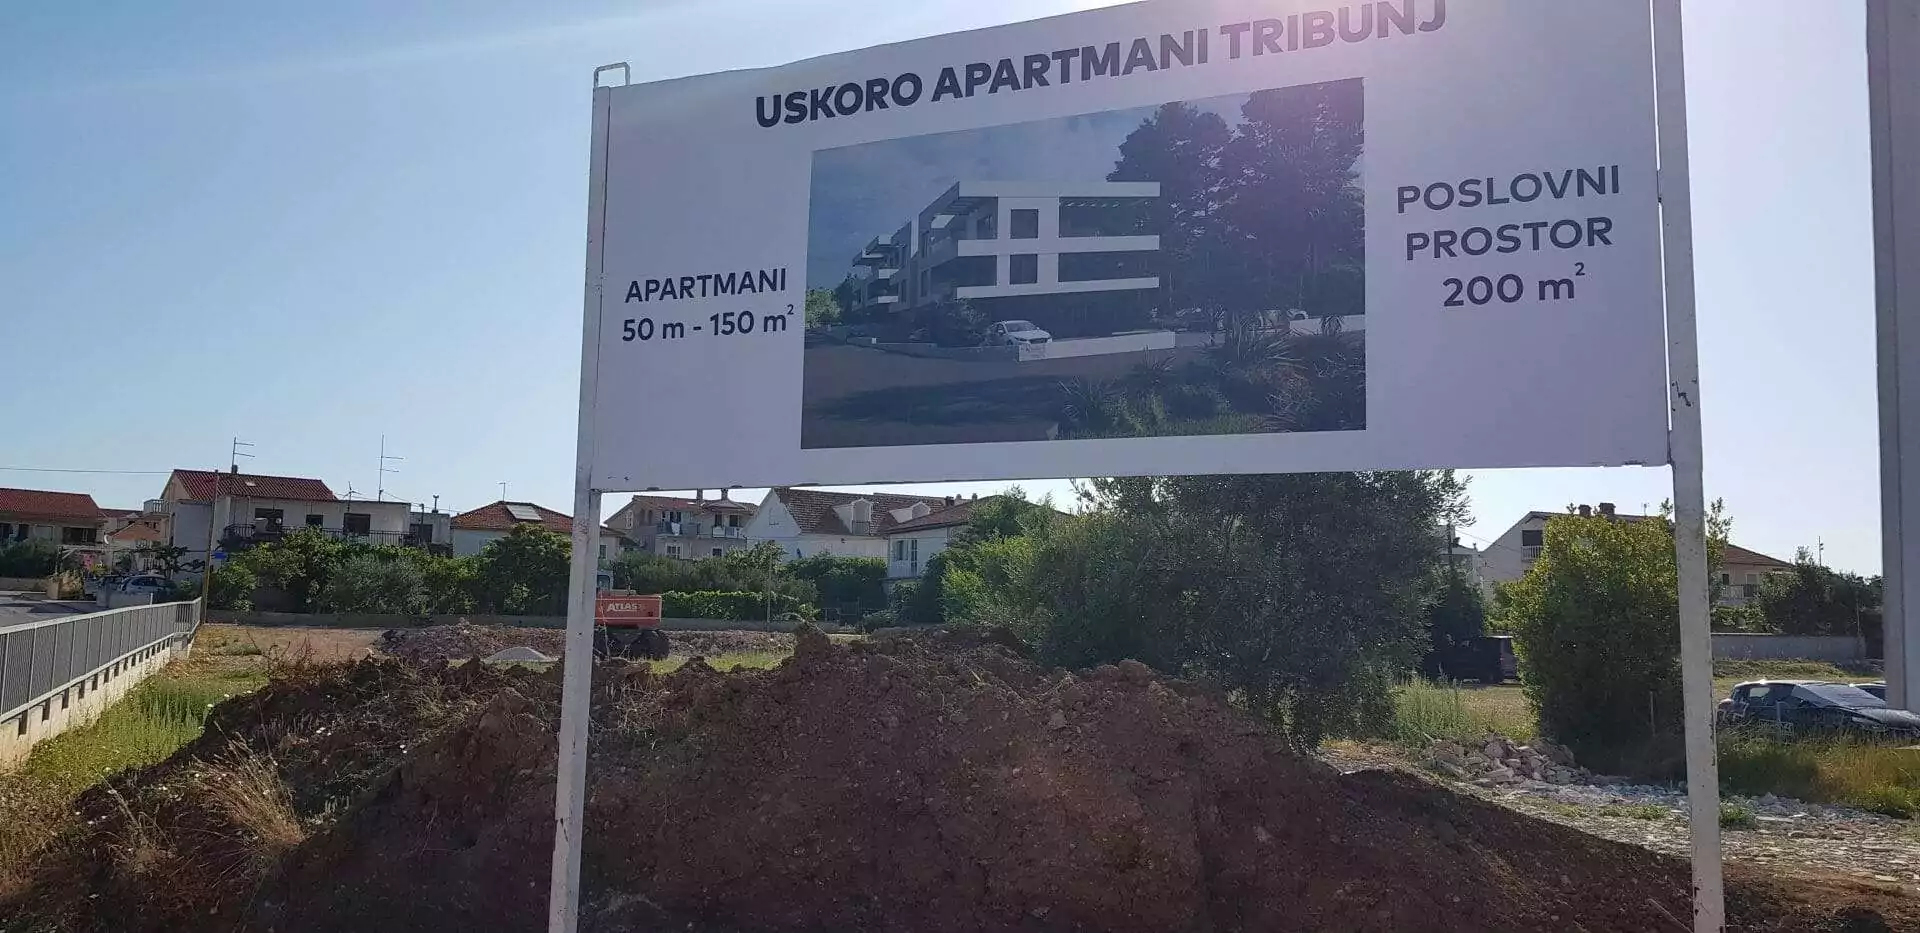 Neue Apartments in Tribunj